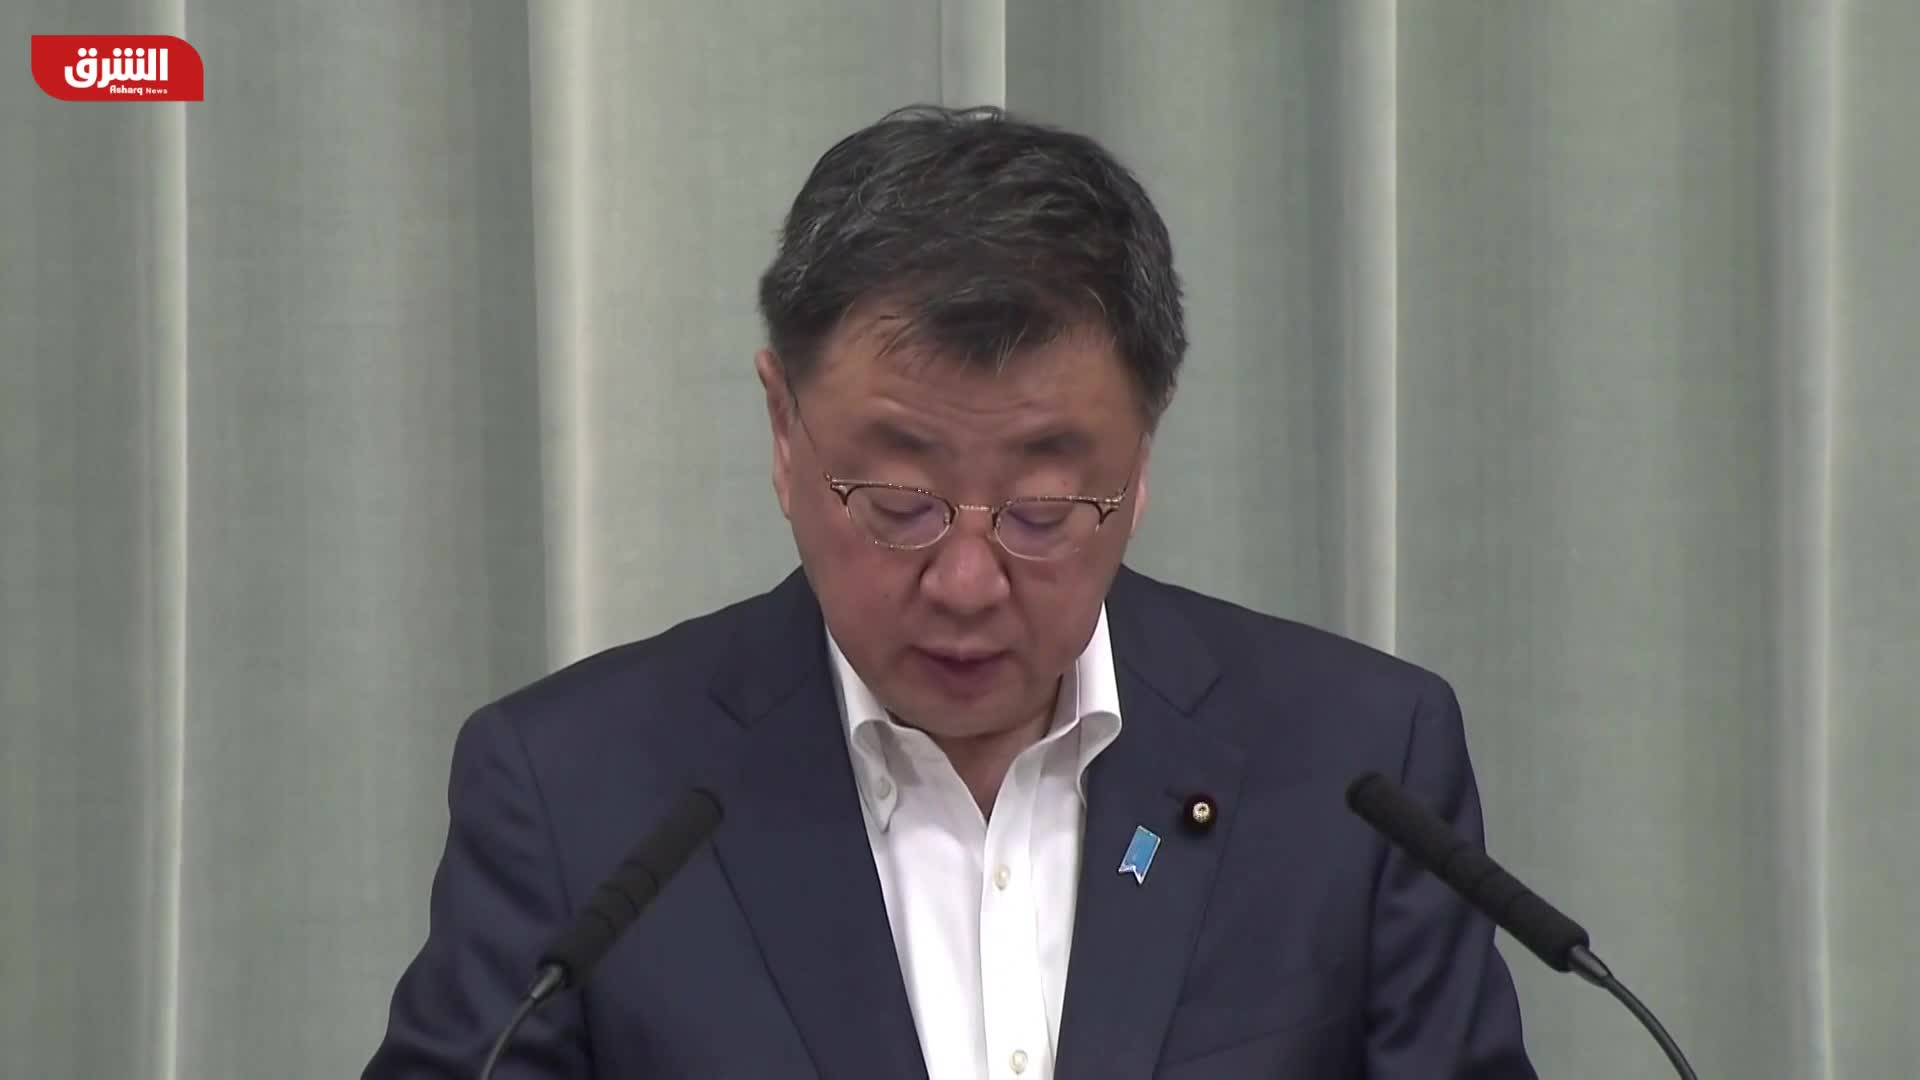 ماتسونو: اليابان ستتخذ التدابير التدميرية اللازمة للرد على صواريخ كوريا الشمالية